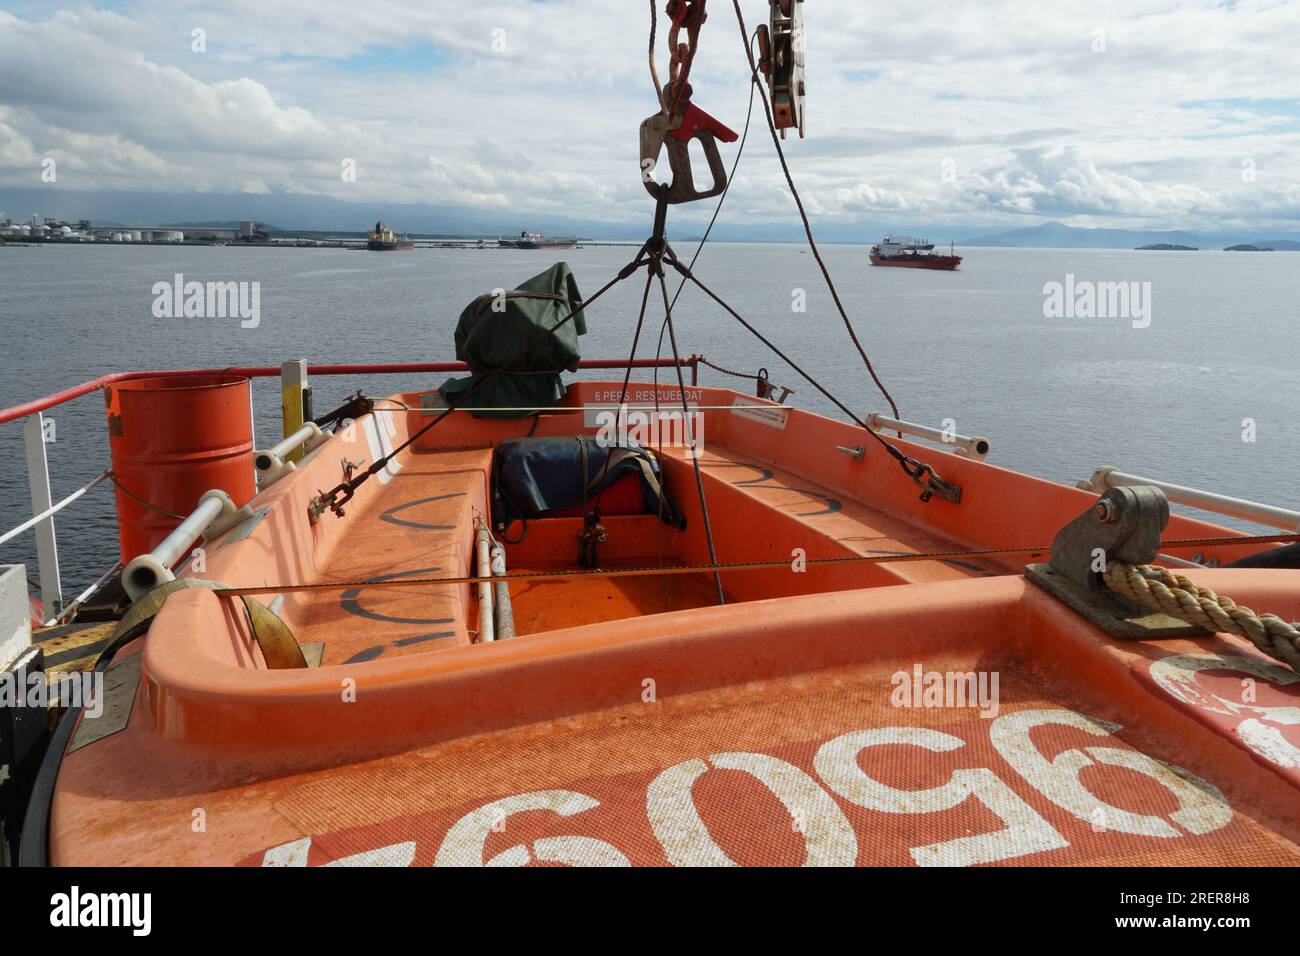 Imbarcazione di soccorso arancione realizzata in materiale plastico rinforzato con vetro e motore fuoribordo. Foto Stock